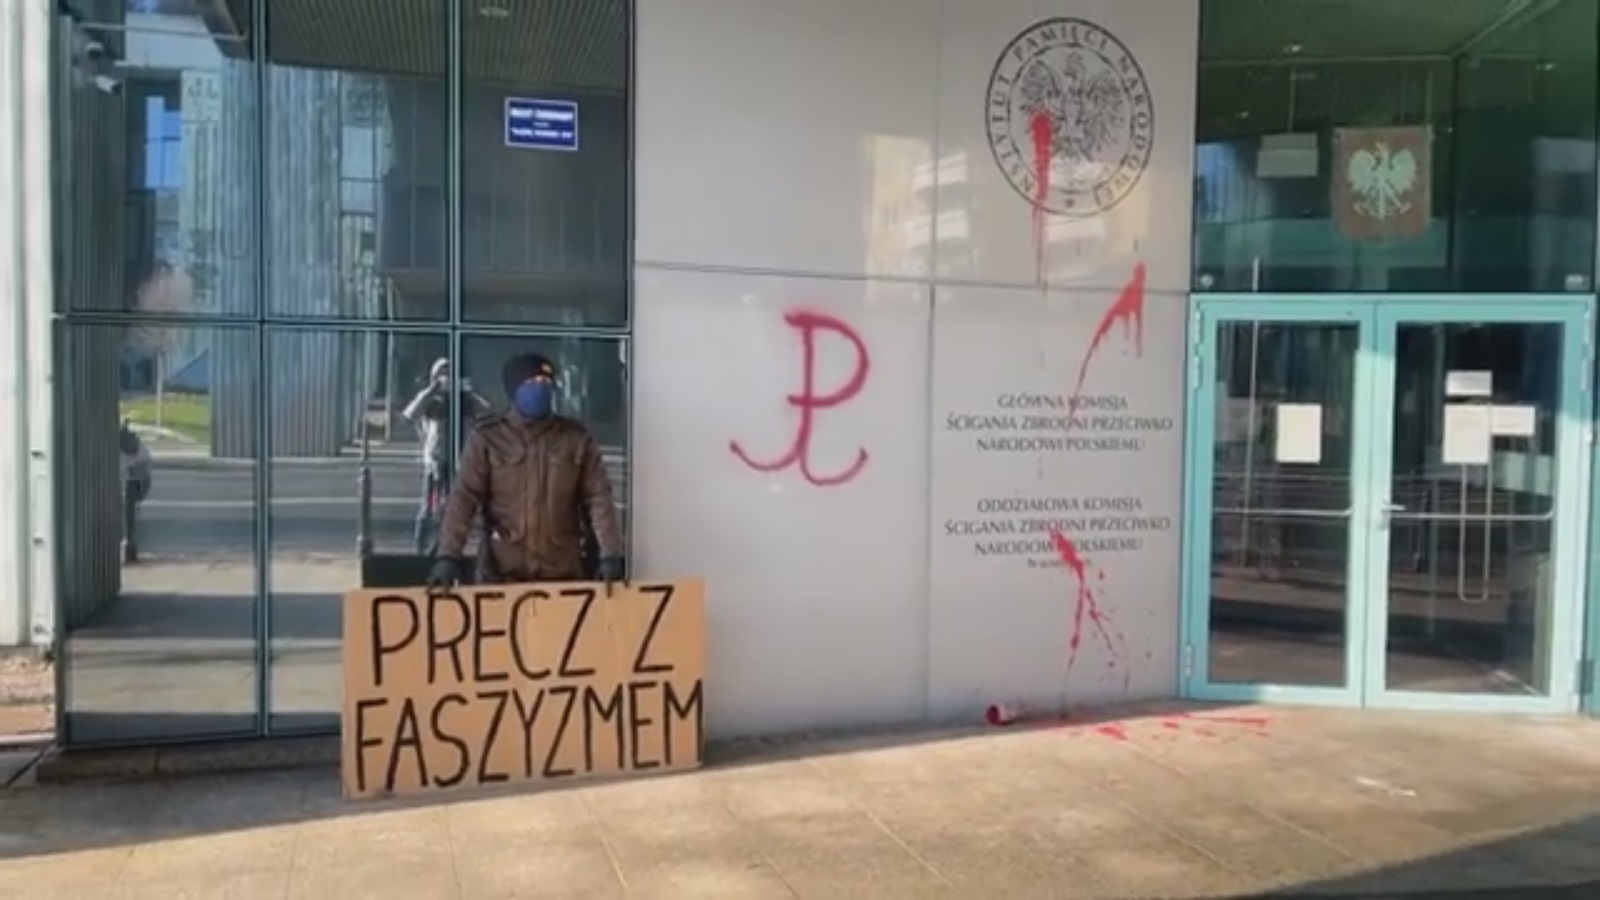 Інститут національної пам’яті у Варшаві облили червоною фарбою. Що відбувається?